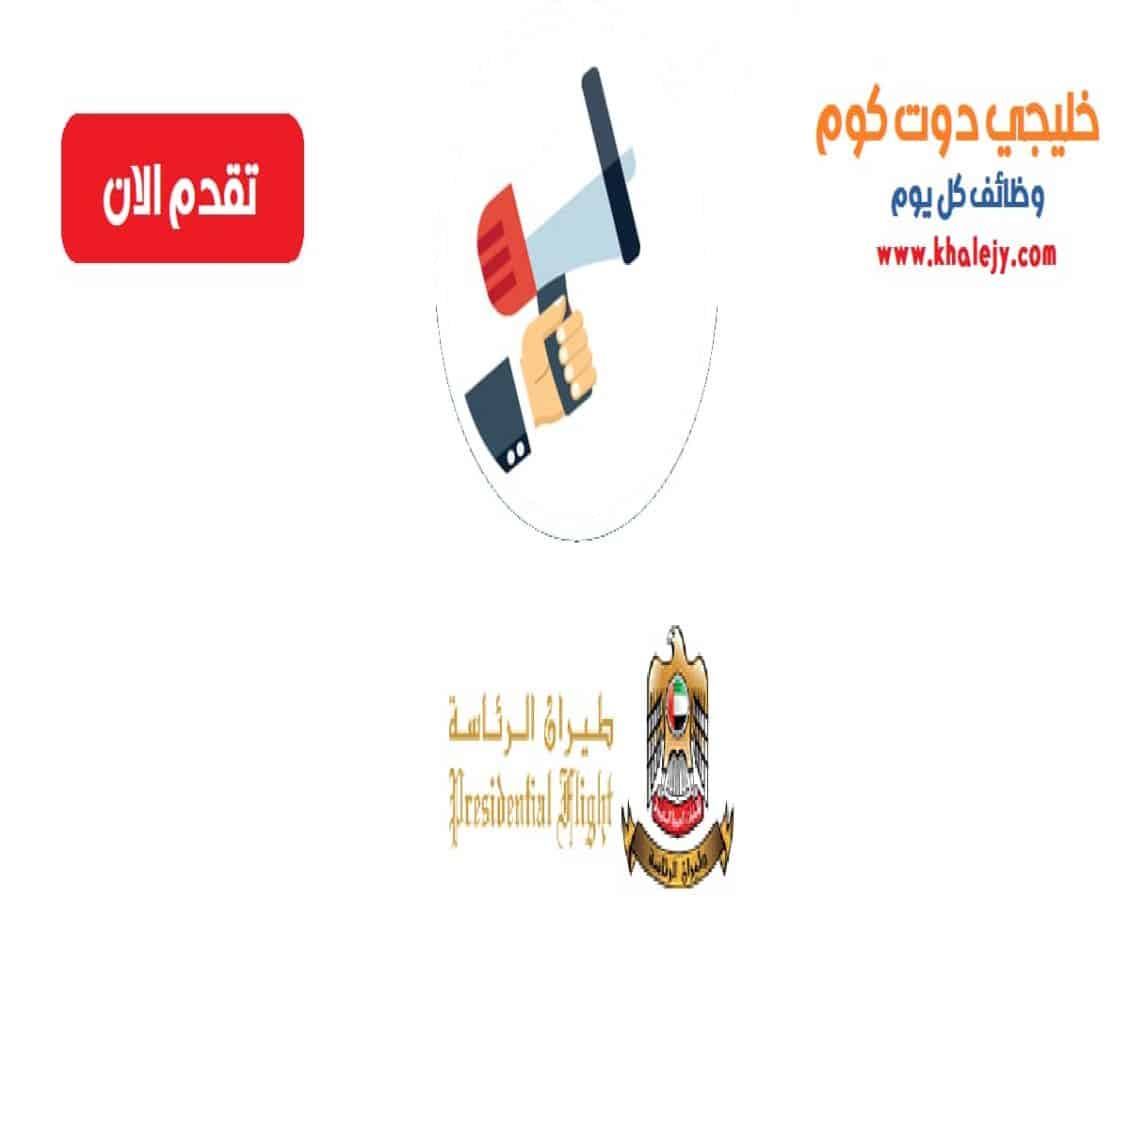 وظائف طيران الرئاسة في أبوظبي للرجال والنساء